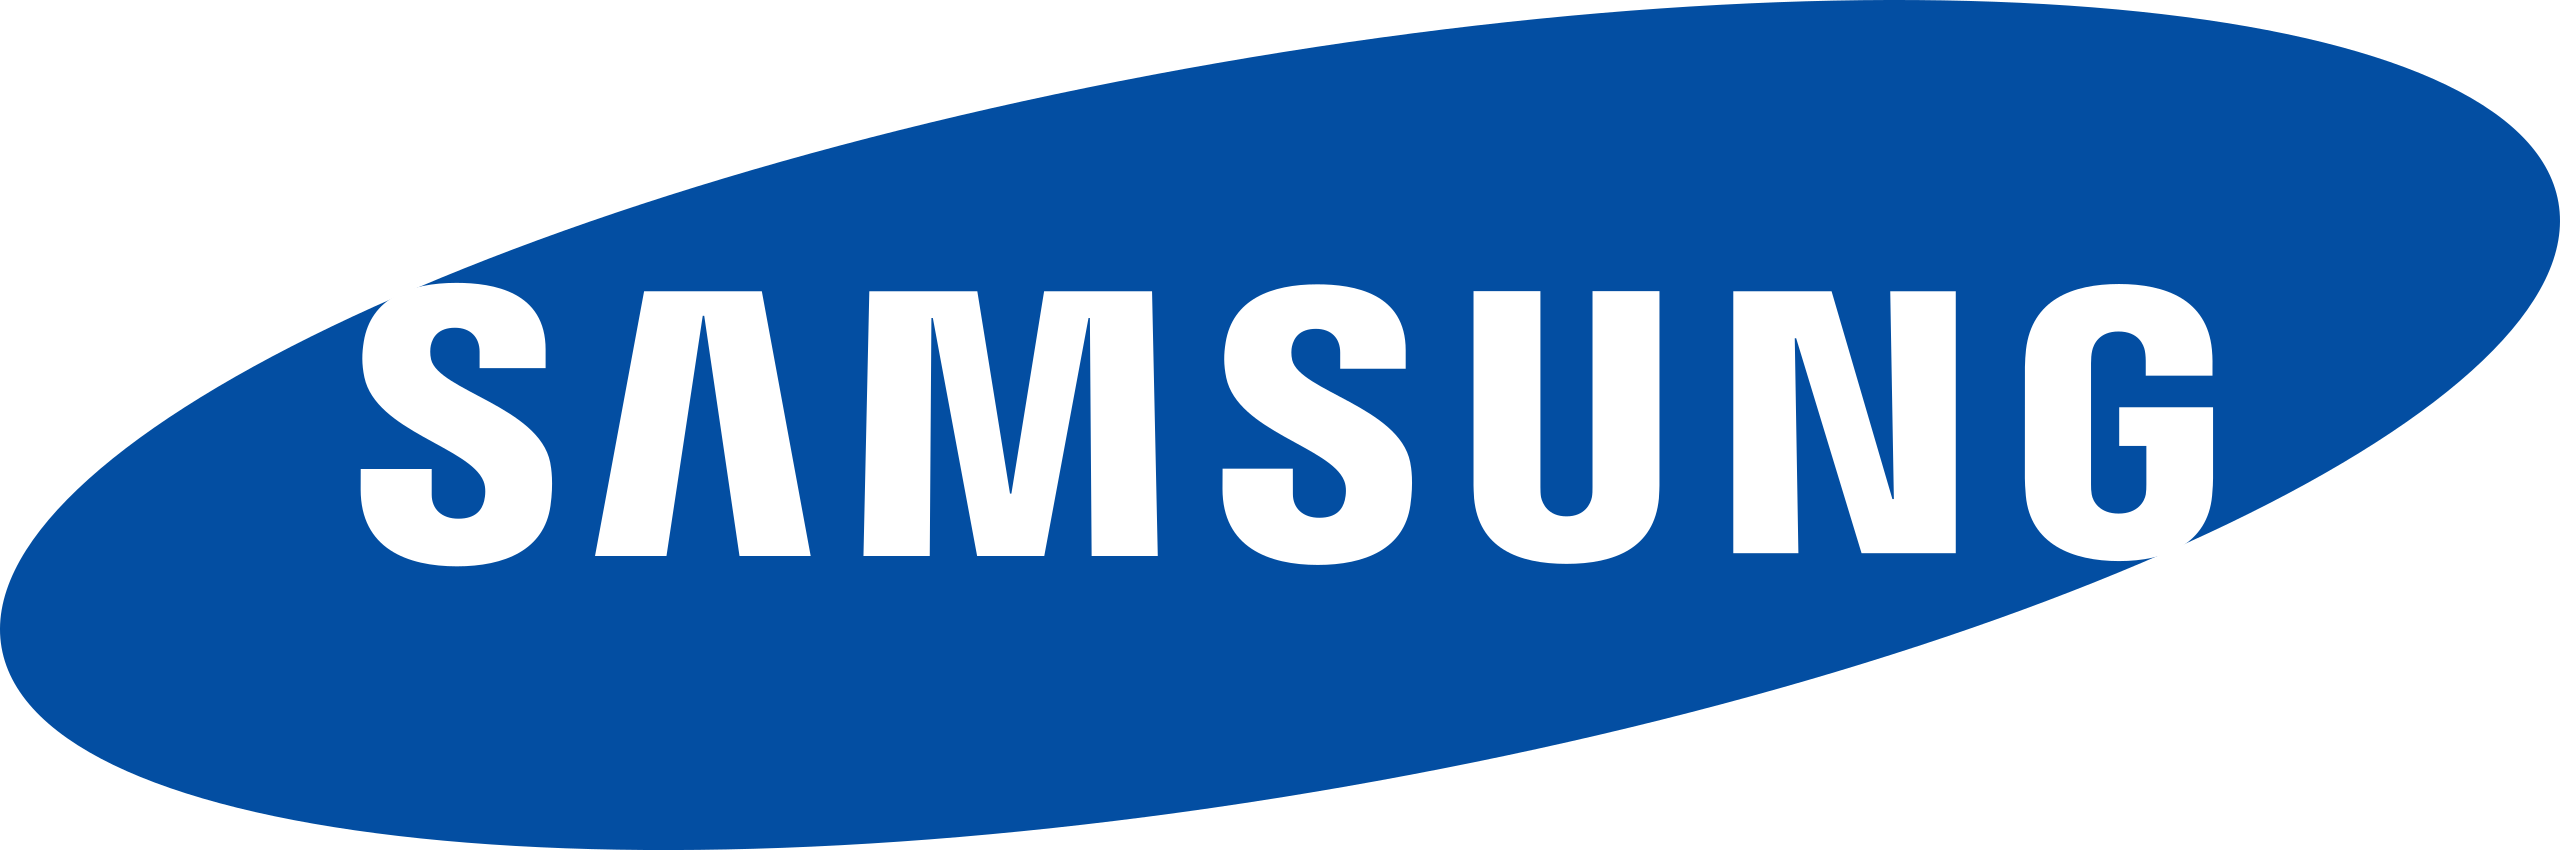 Samsung partner